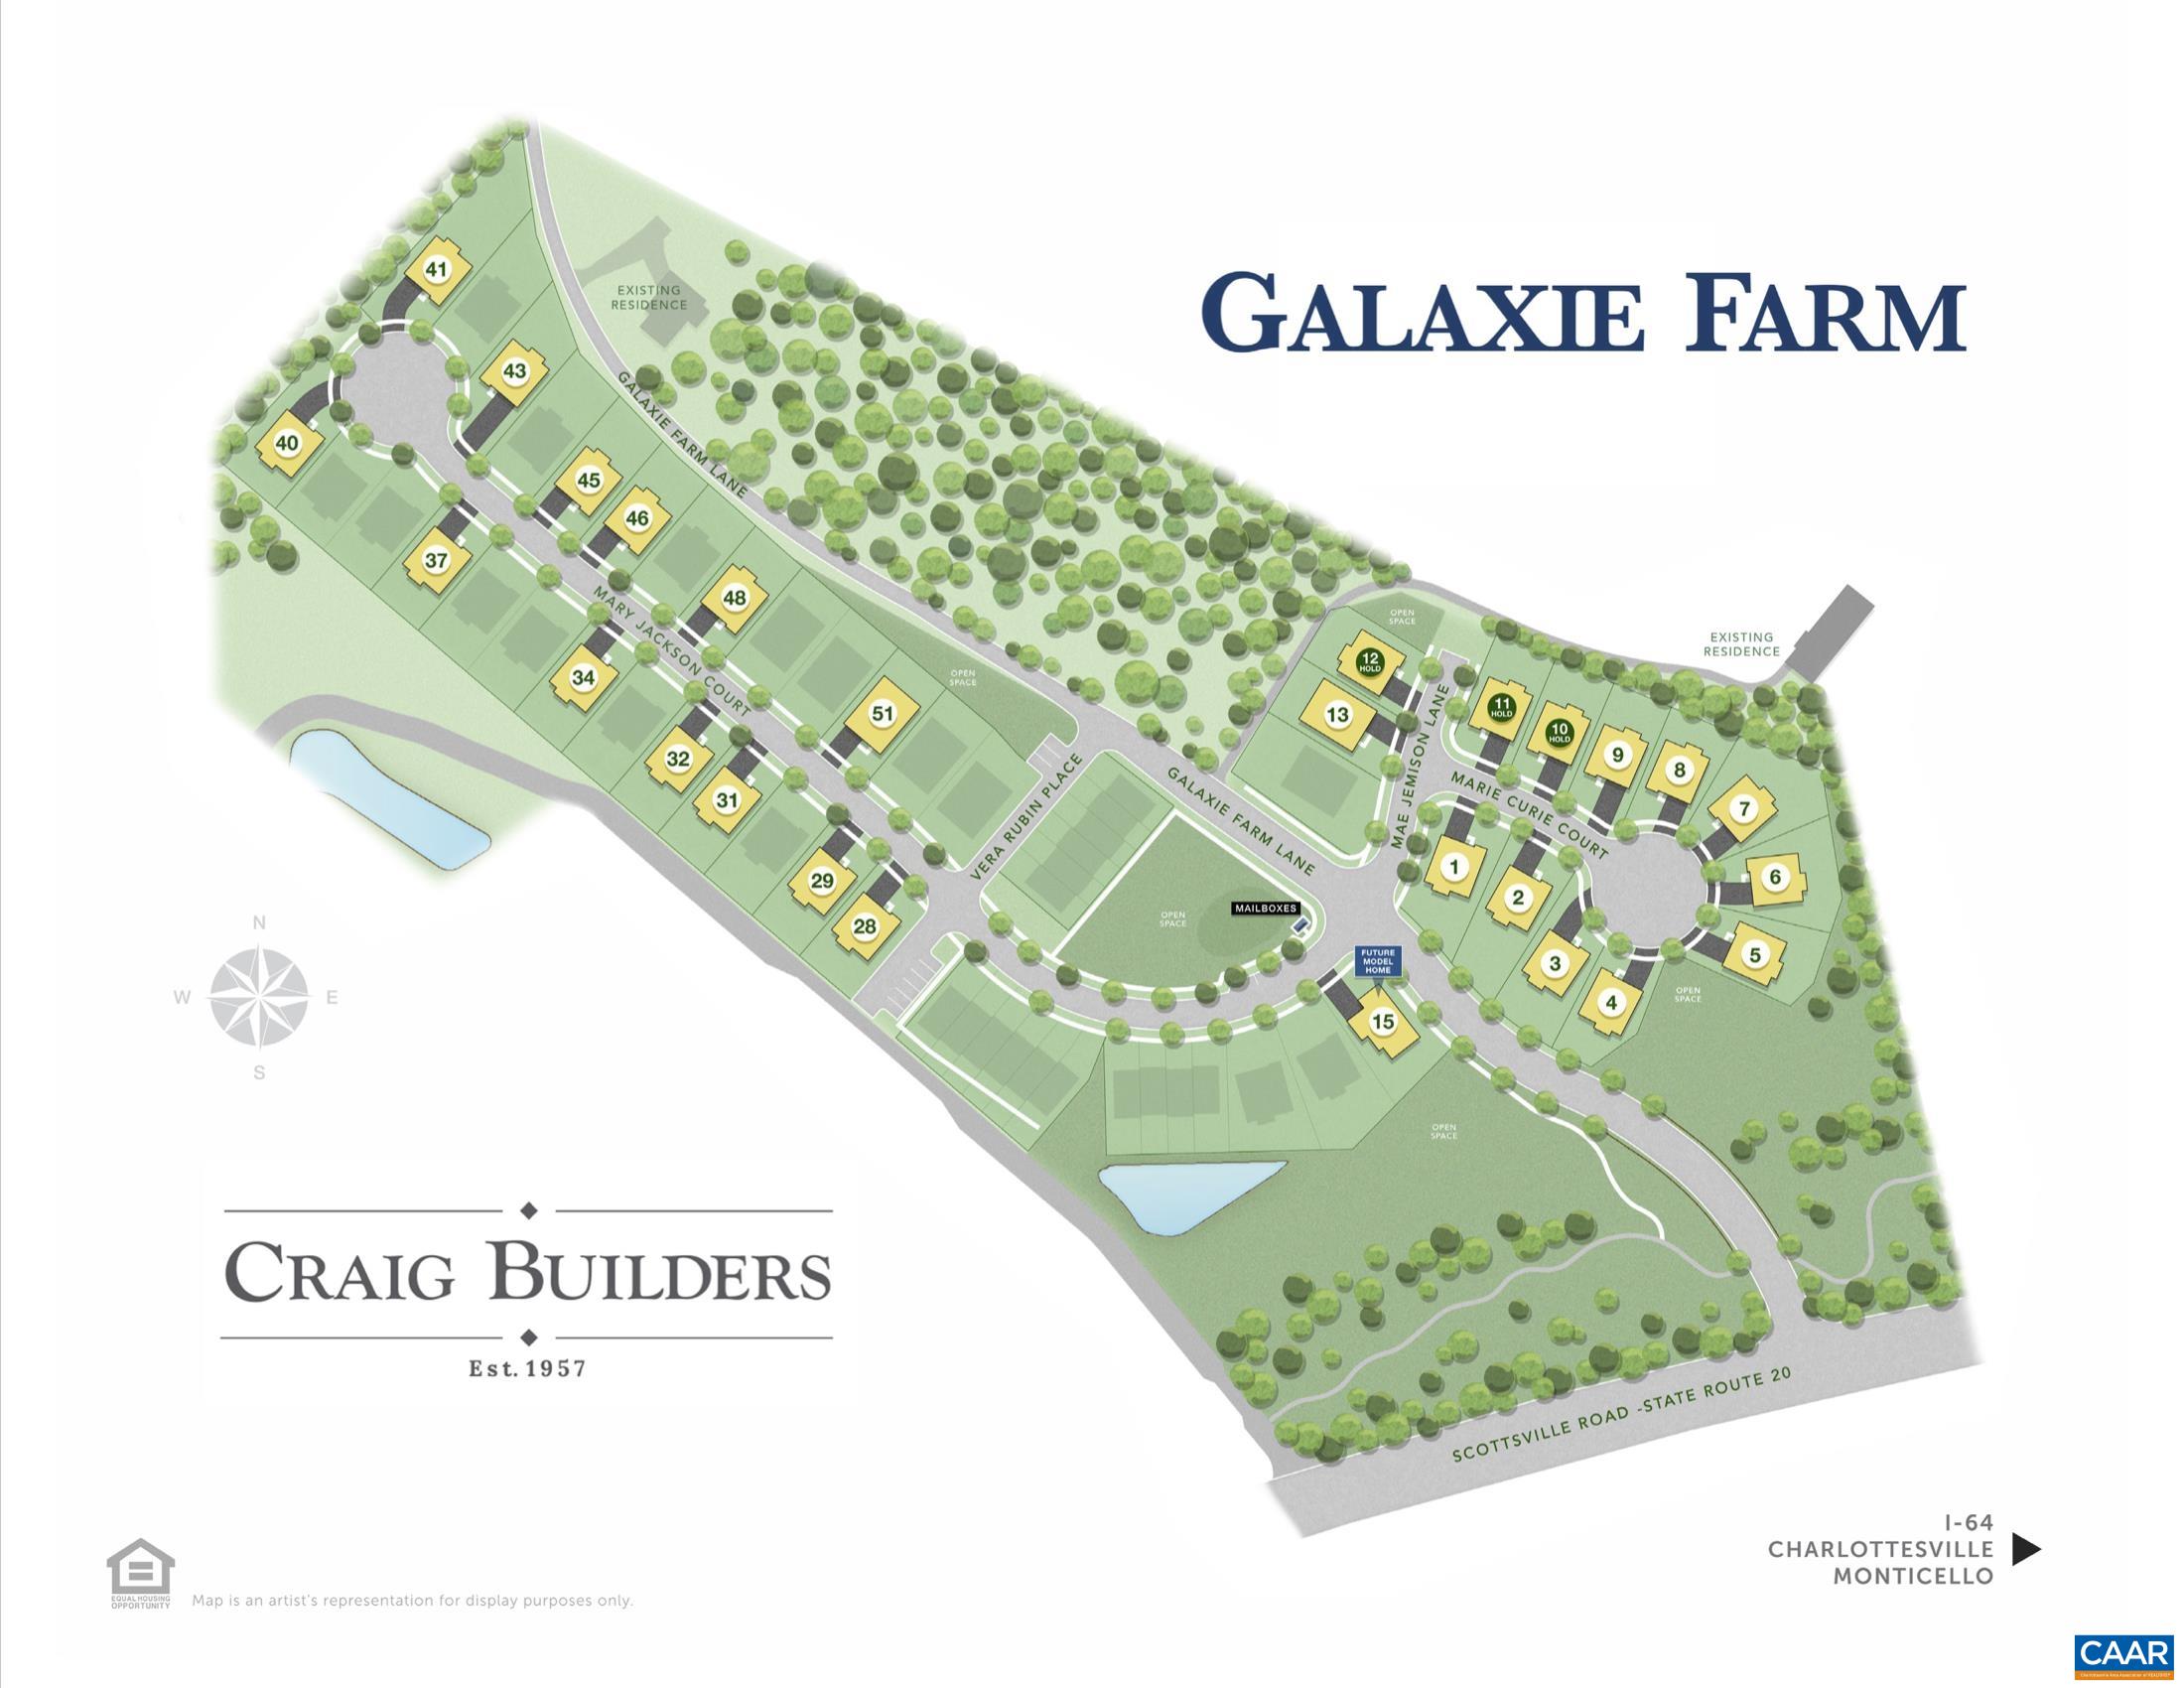 Craig Builders home in Galaxie Farm